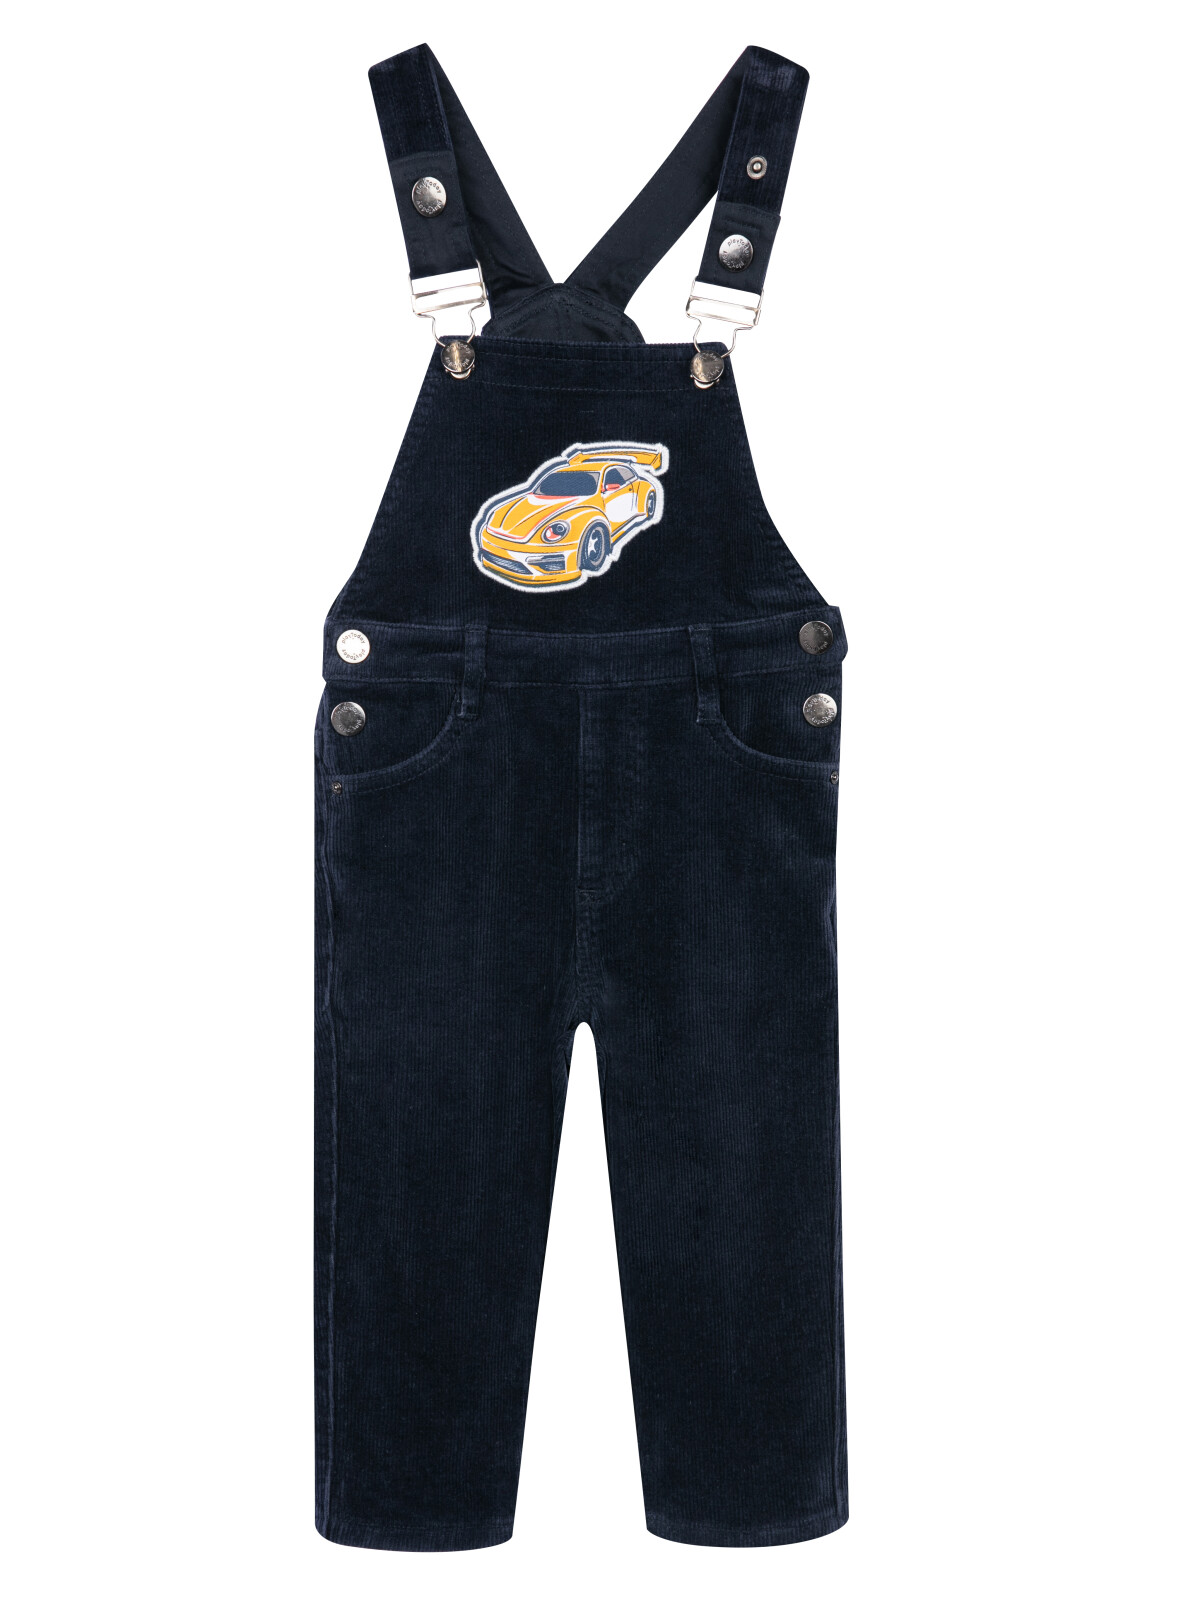 Полукомбинезон детский текстильный джинсовый утепленный флисом для мальчиков PlayToday, 92 oshkosh b gosh полукомбинезон джинсовый k320112